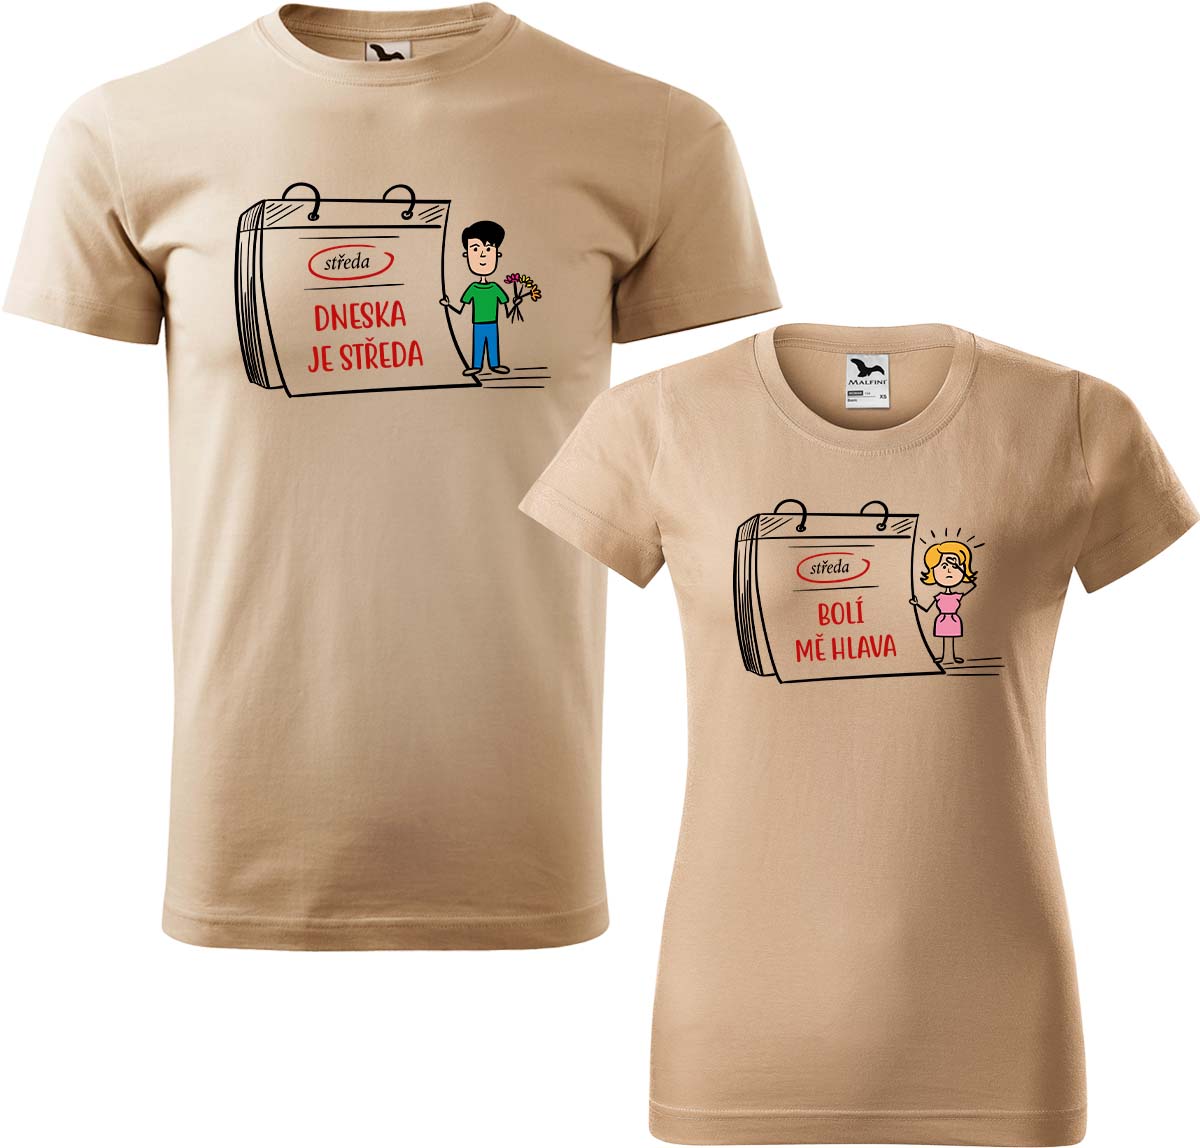 Trička pro páry - Dneska je středa Barva: Písková (08), Velikost dámské tričko: S, Velikost pánské tričko: XL